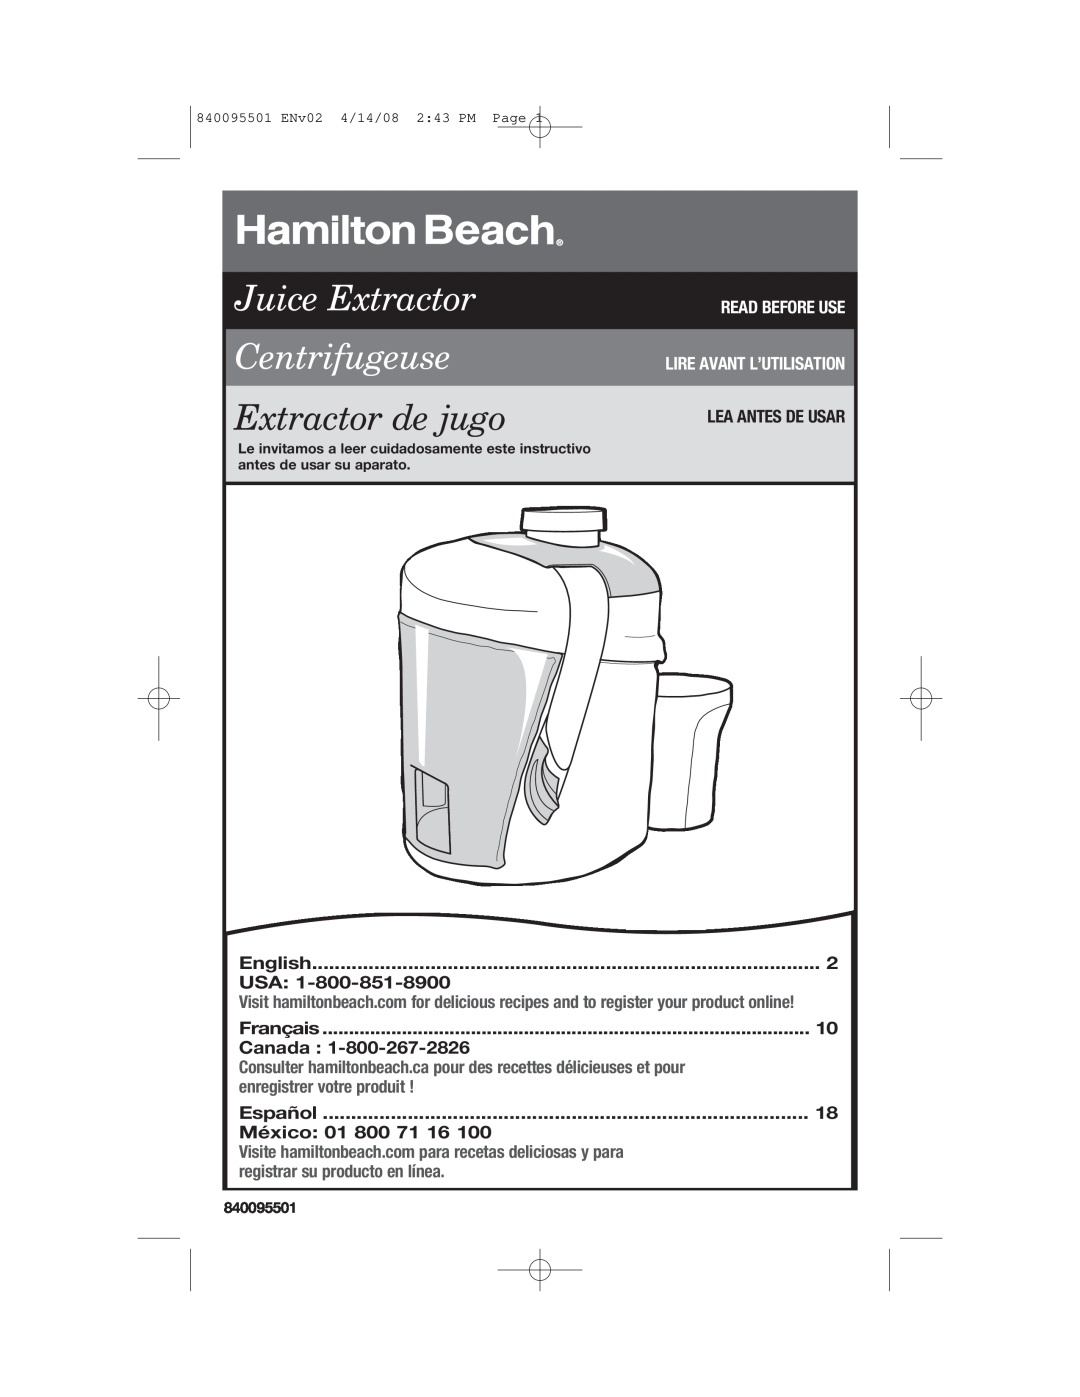 Hamilton Beach 840095501 manual Juice Extractor Centrifugeuse, Extractor de jugo, Read Before Use Lire Avant L’Utilisation 